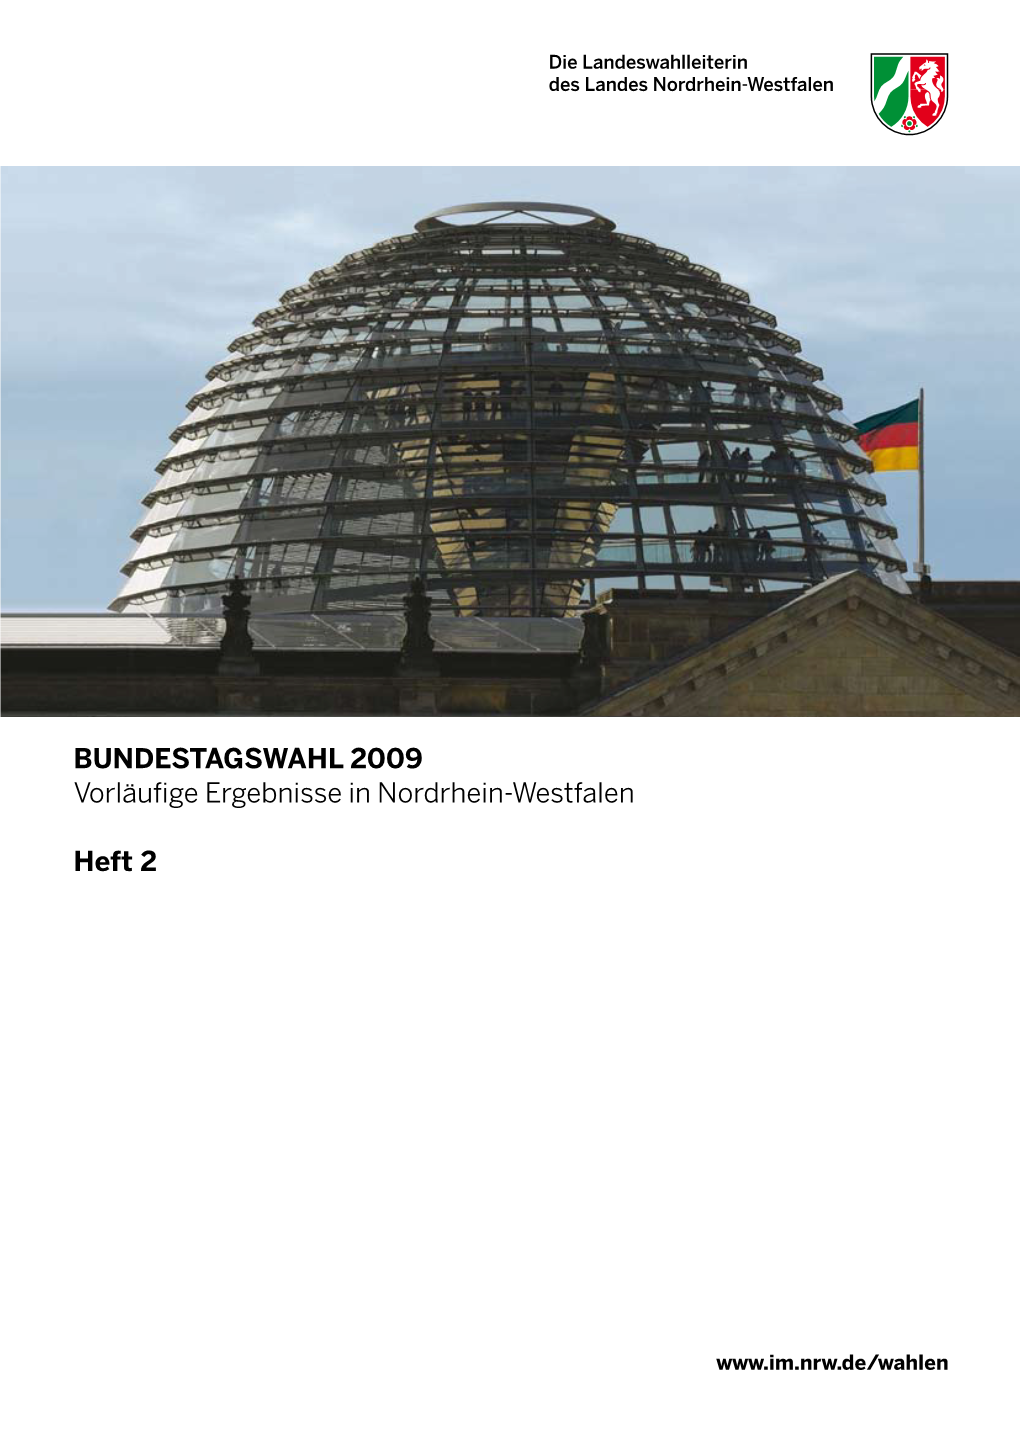 Bundestagswahl 2009 Heft 2 Vorläufige Ergebnisse in Nordrhein